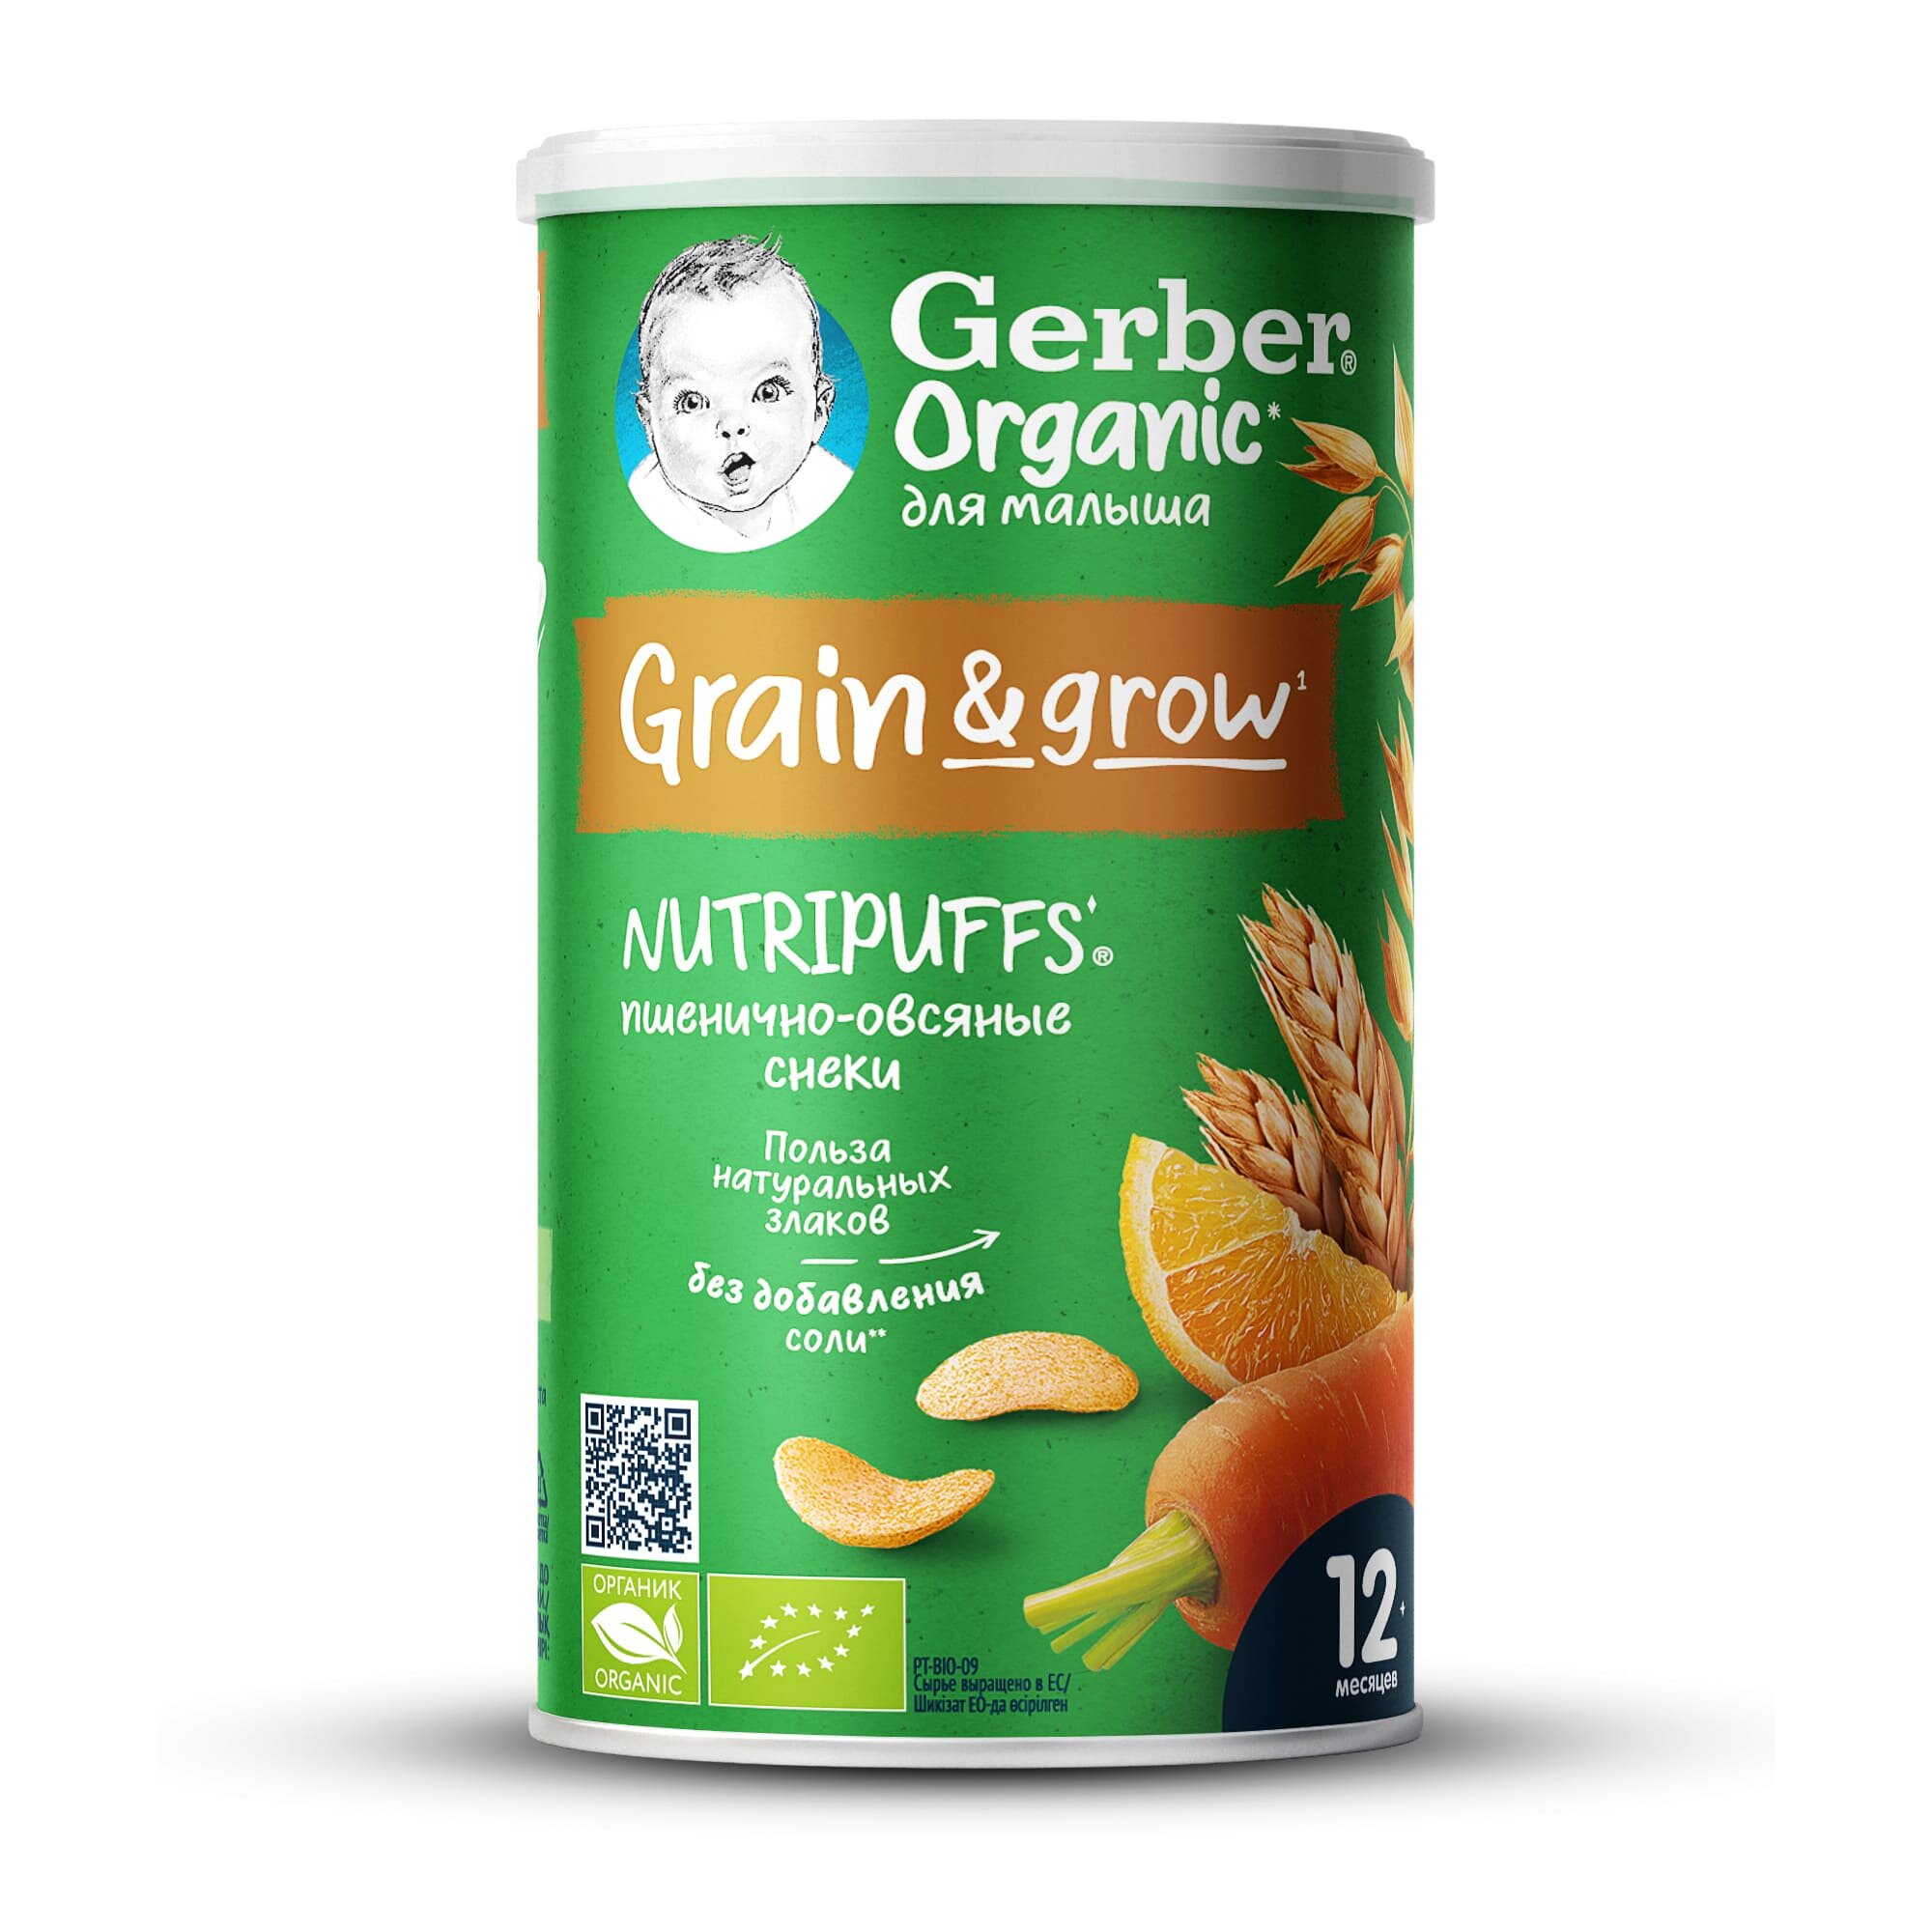 Снэк Gerber Nutripuffs Organic пшенично-овсяные с морковью и апельсином, с 1 года, 35 г